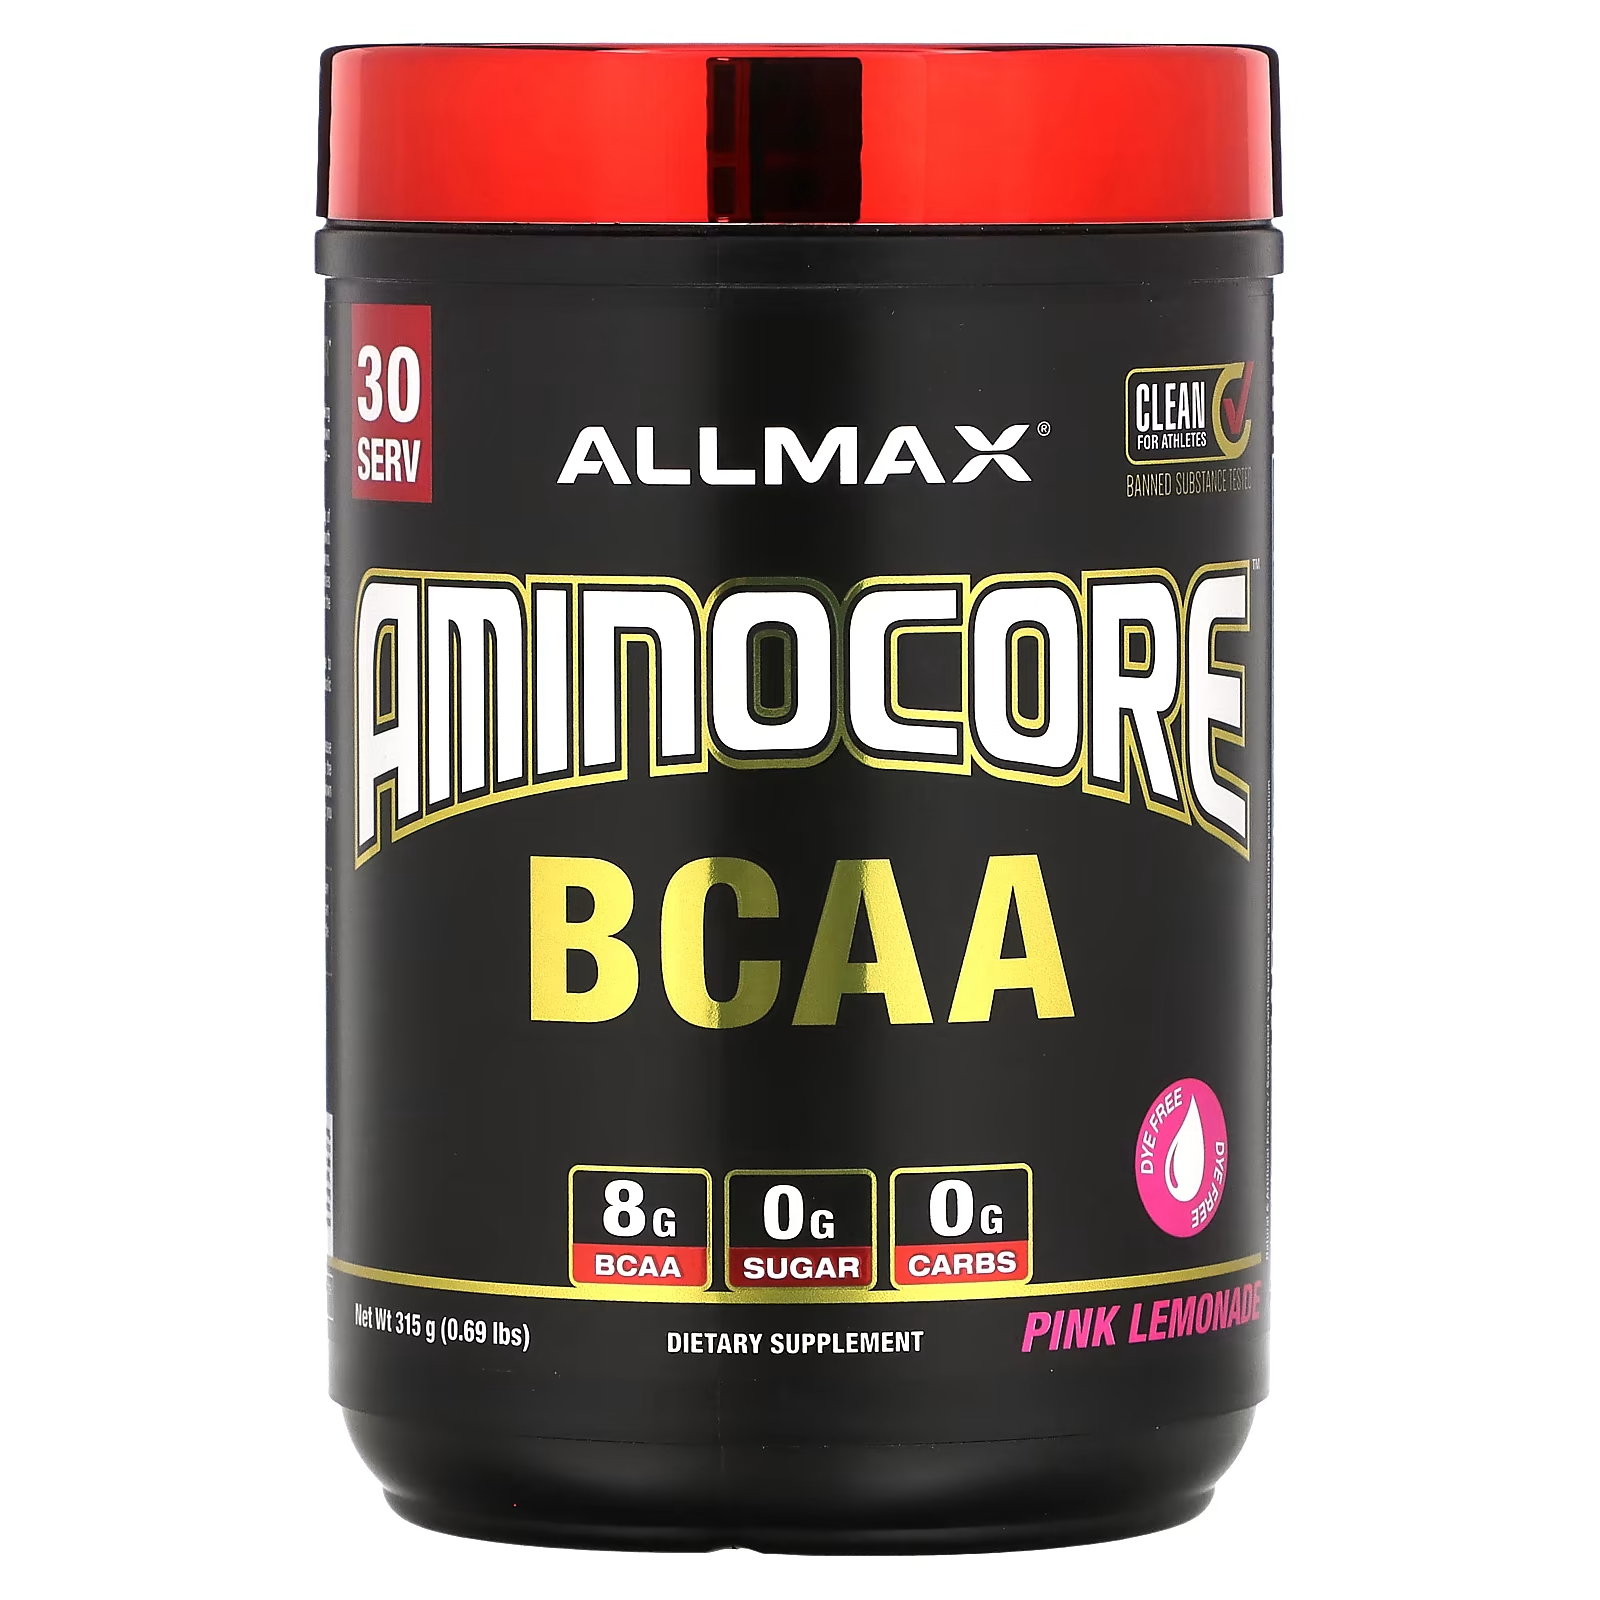 Пищевая добавка ALLMAX AMINOCORE BCAA, розовый лимонад добавка для наращивания мышечной массы muscletech 30 капсул